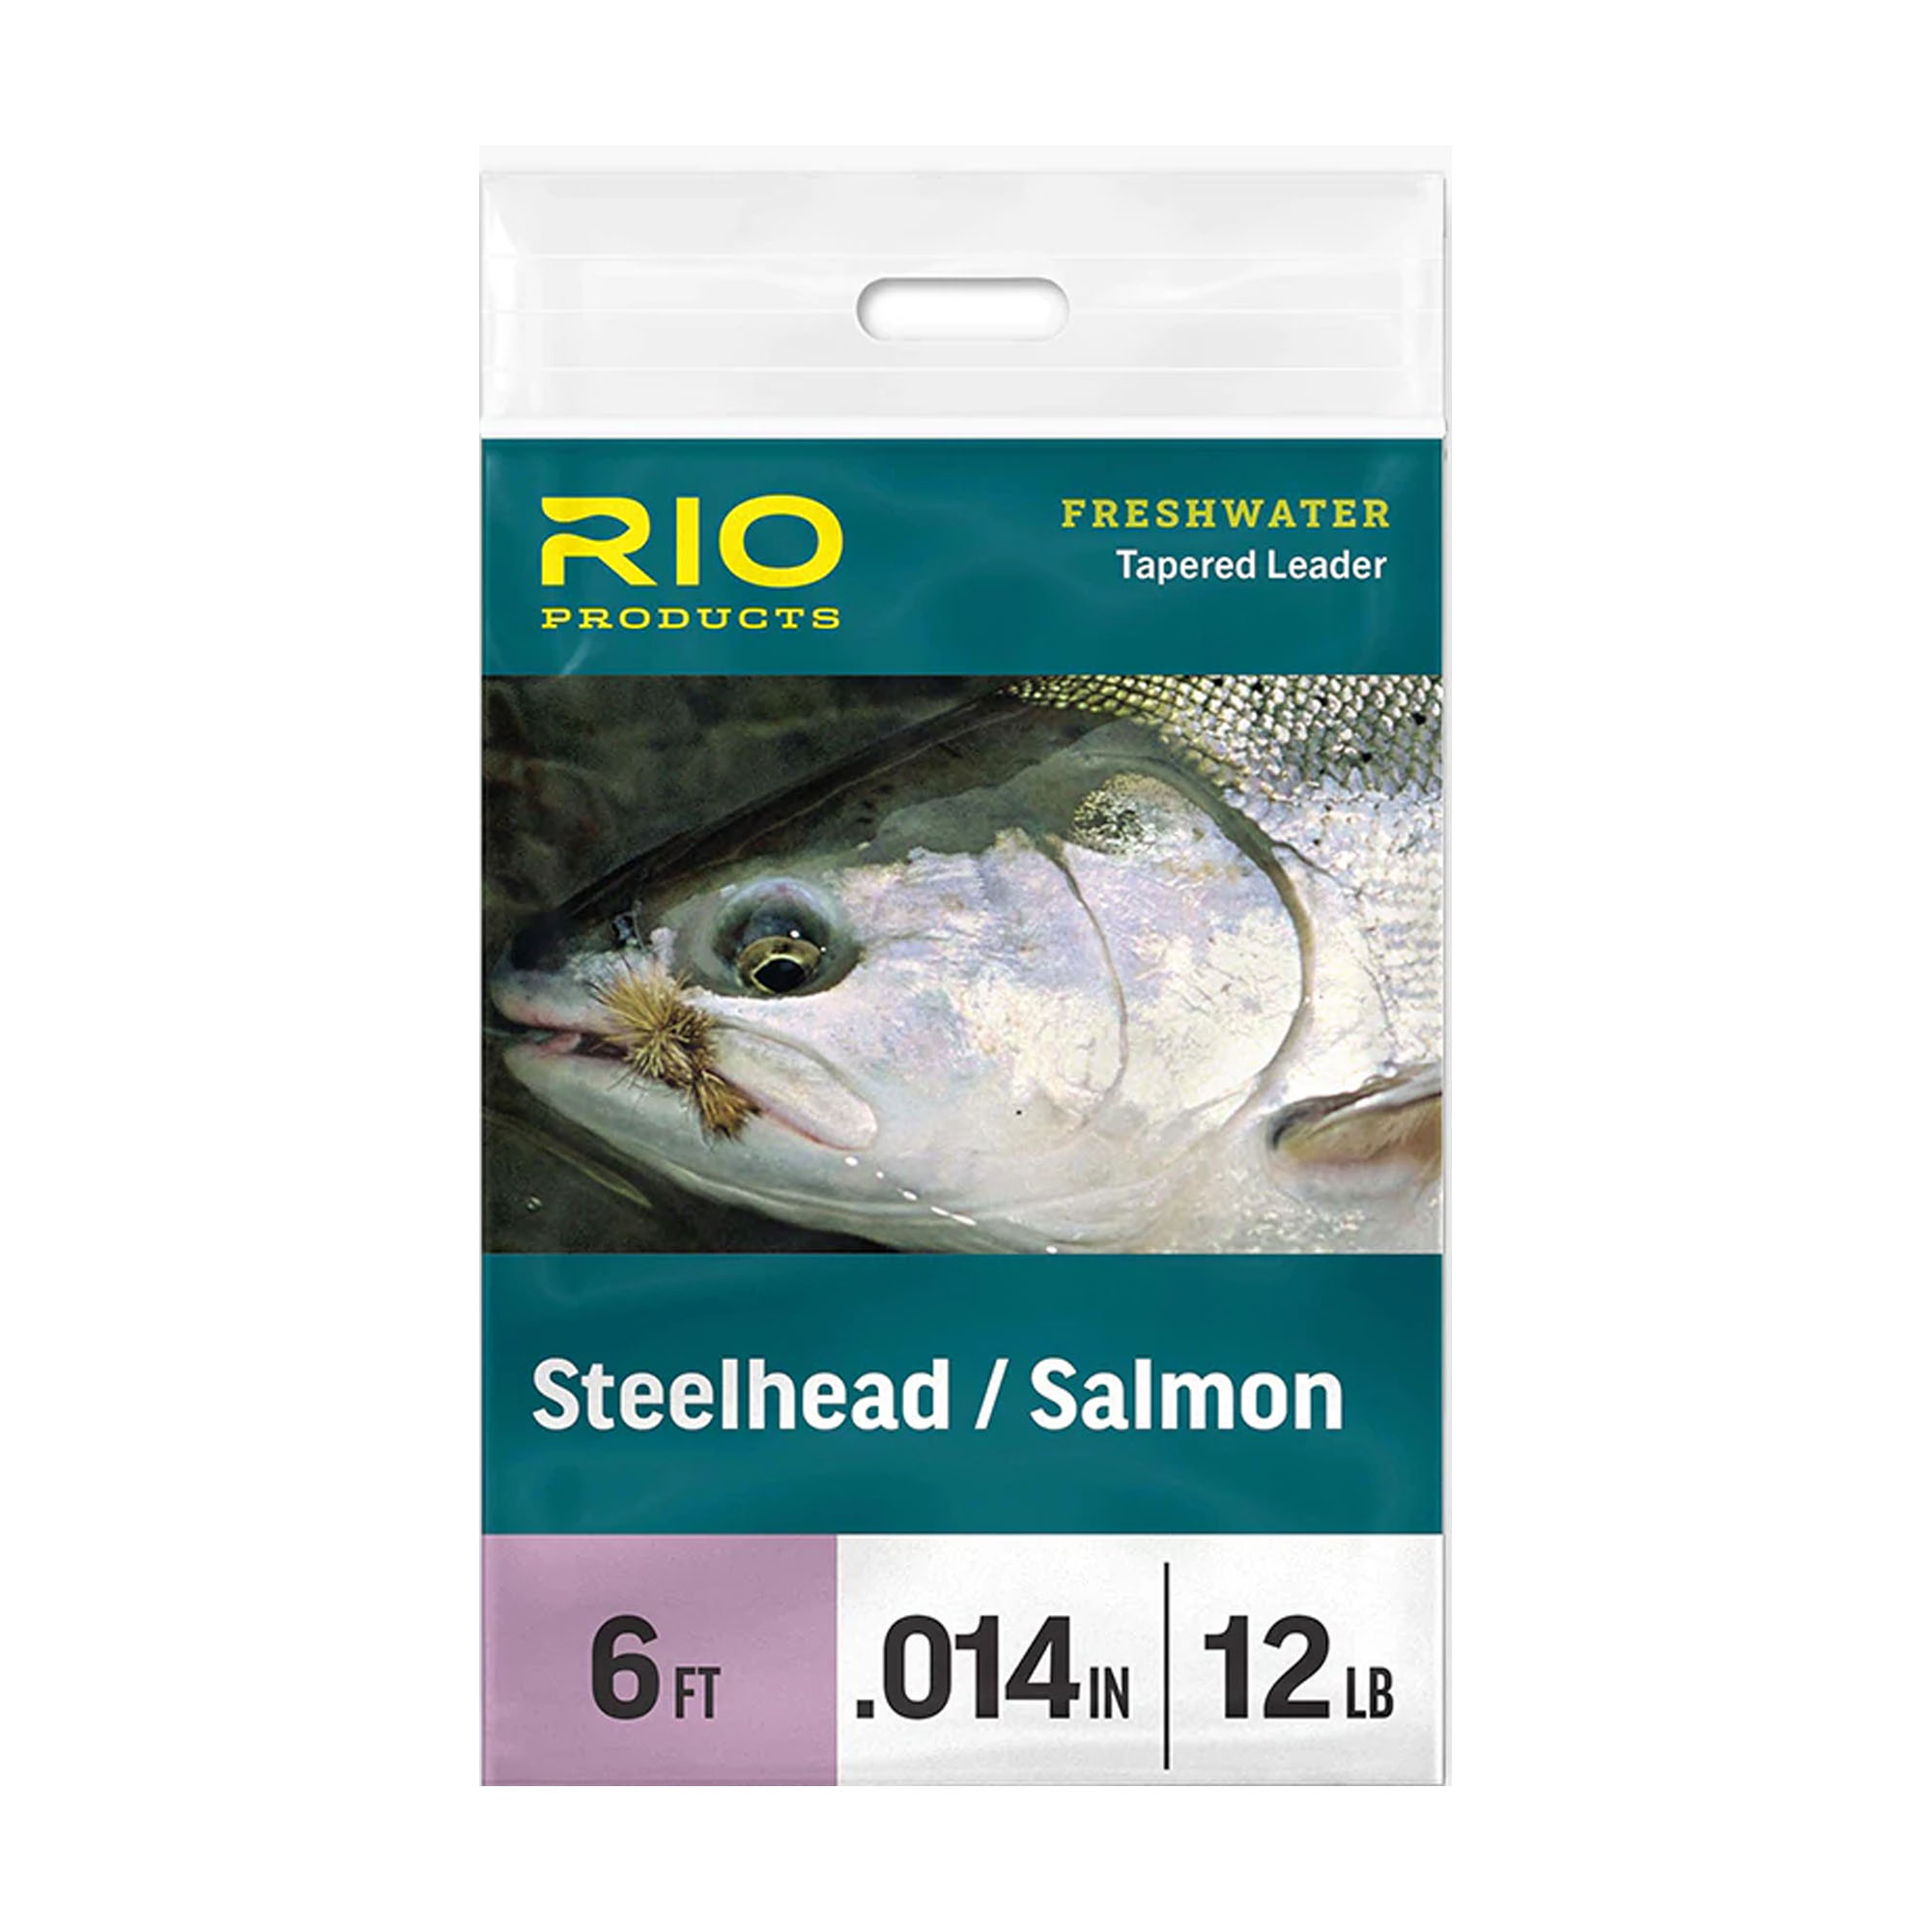 RIO Steelhead/Salmon Leader – Guide Flyfishing, Fly Fishing Rods, Reels, Sage, Redington, RIO